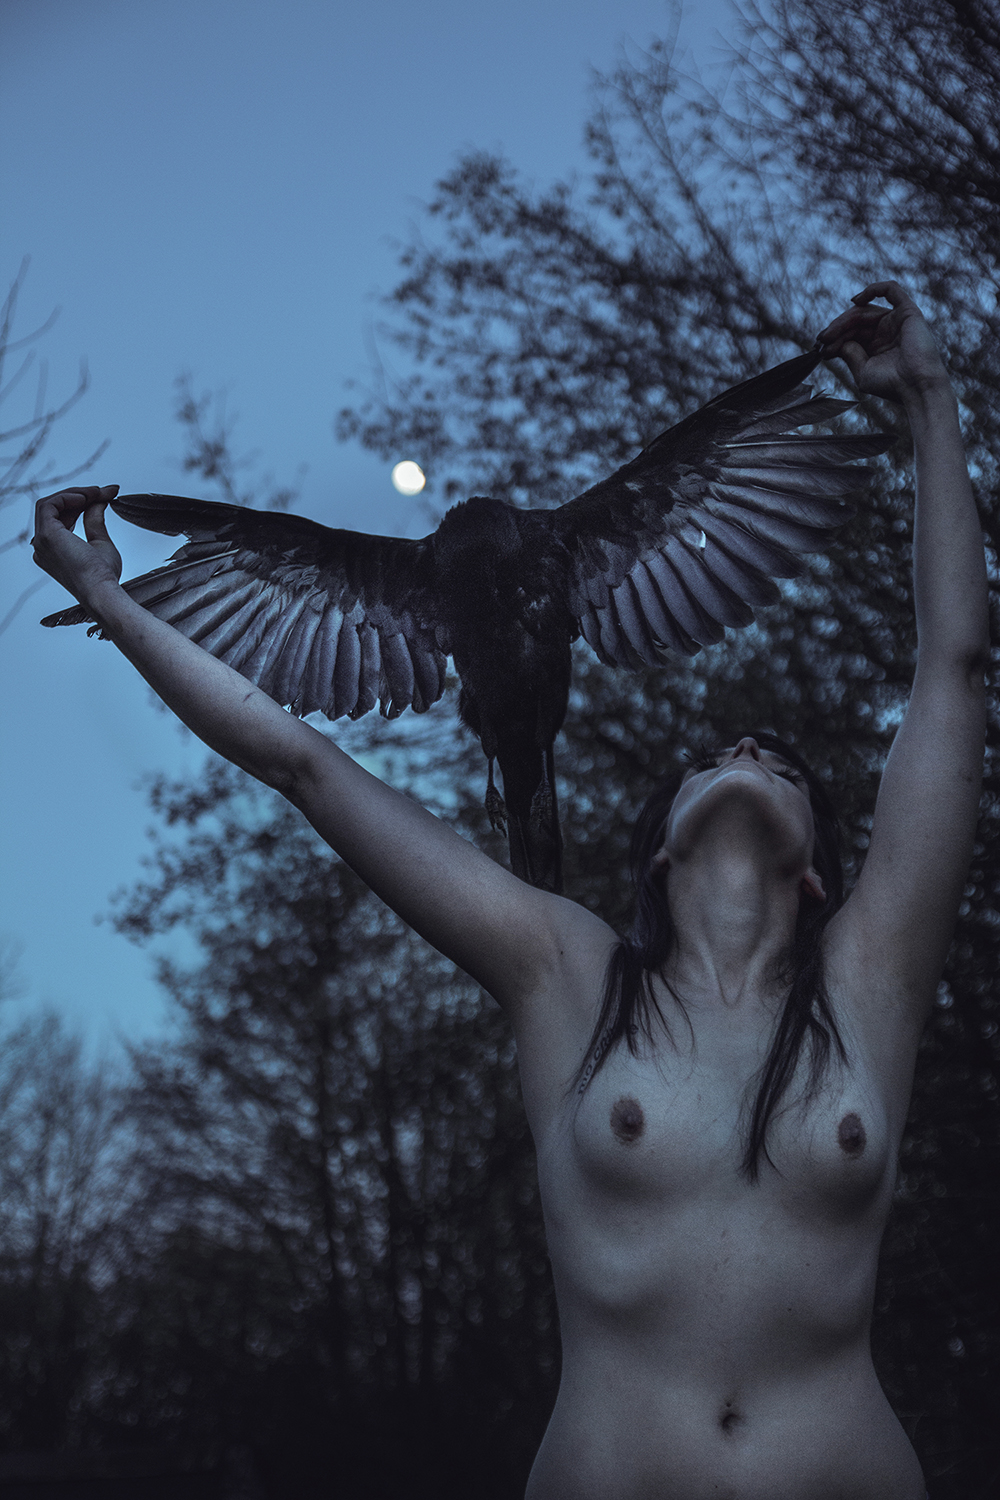 Elena Helfrecht, Arise - woman holding bird under moonlight